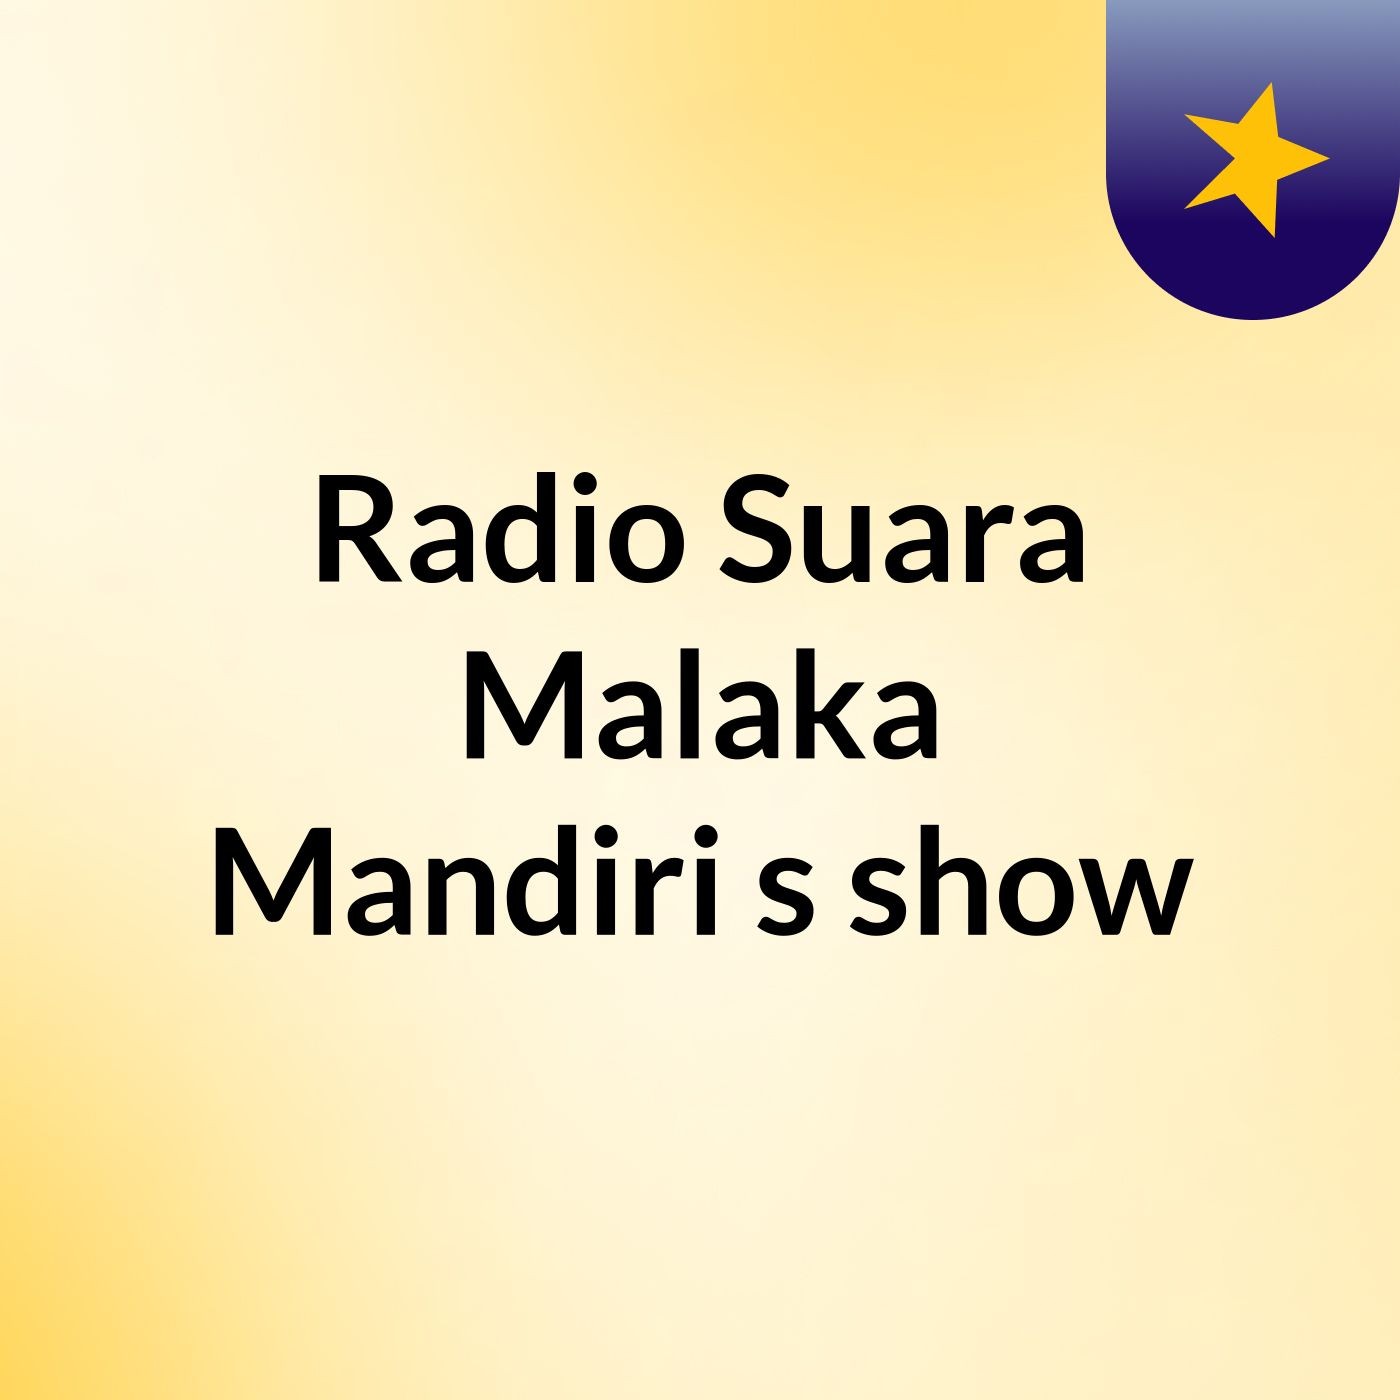 Radio Suara Malaka Mandiri's show